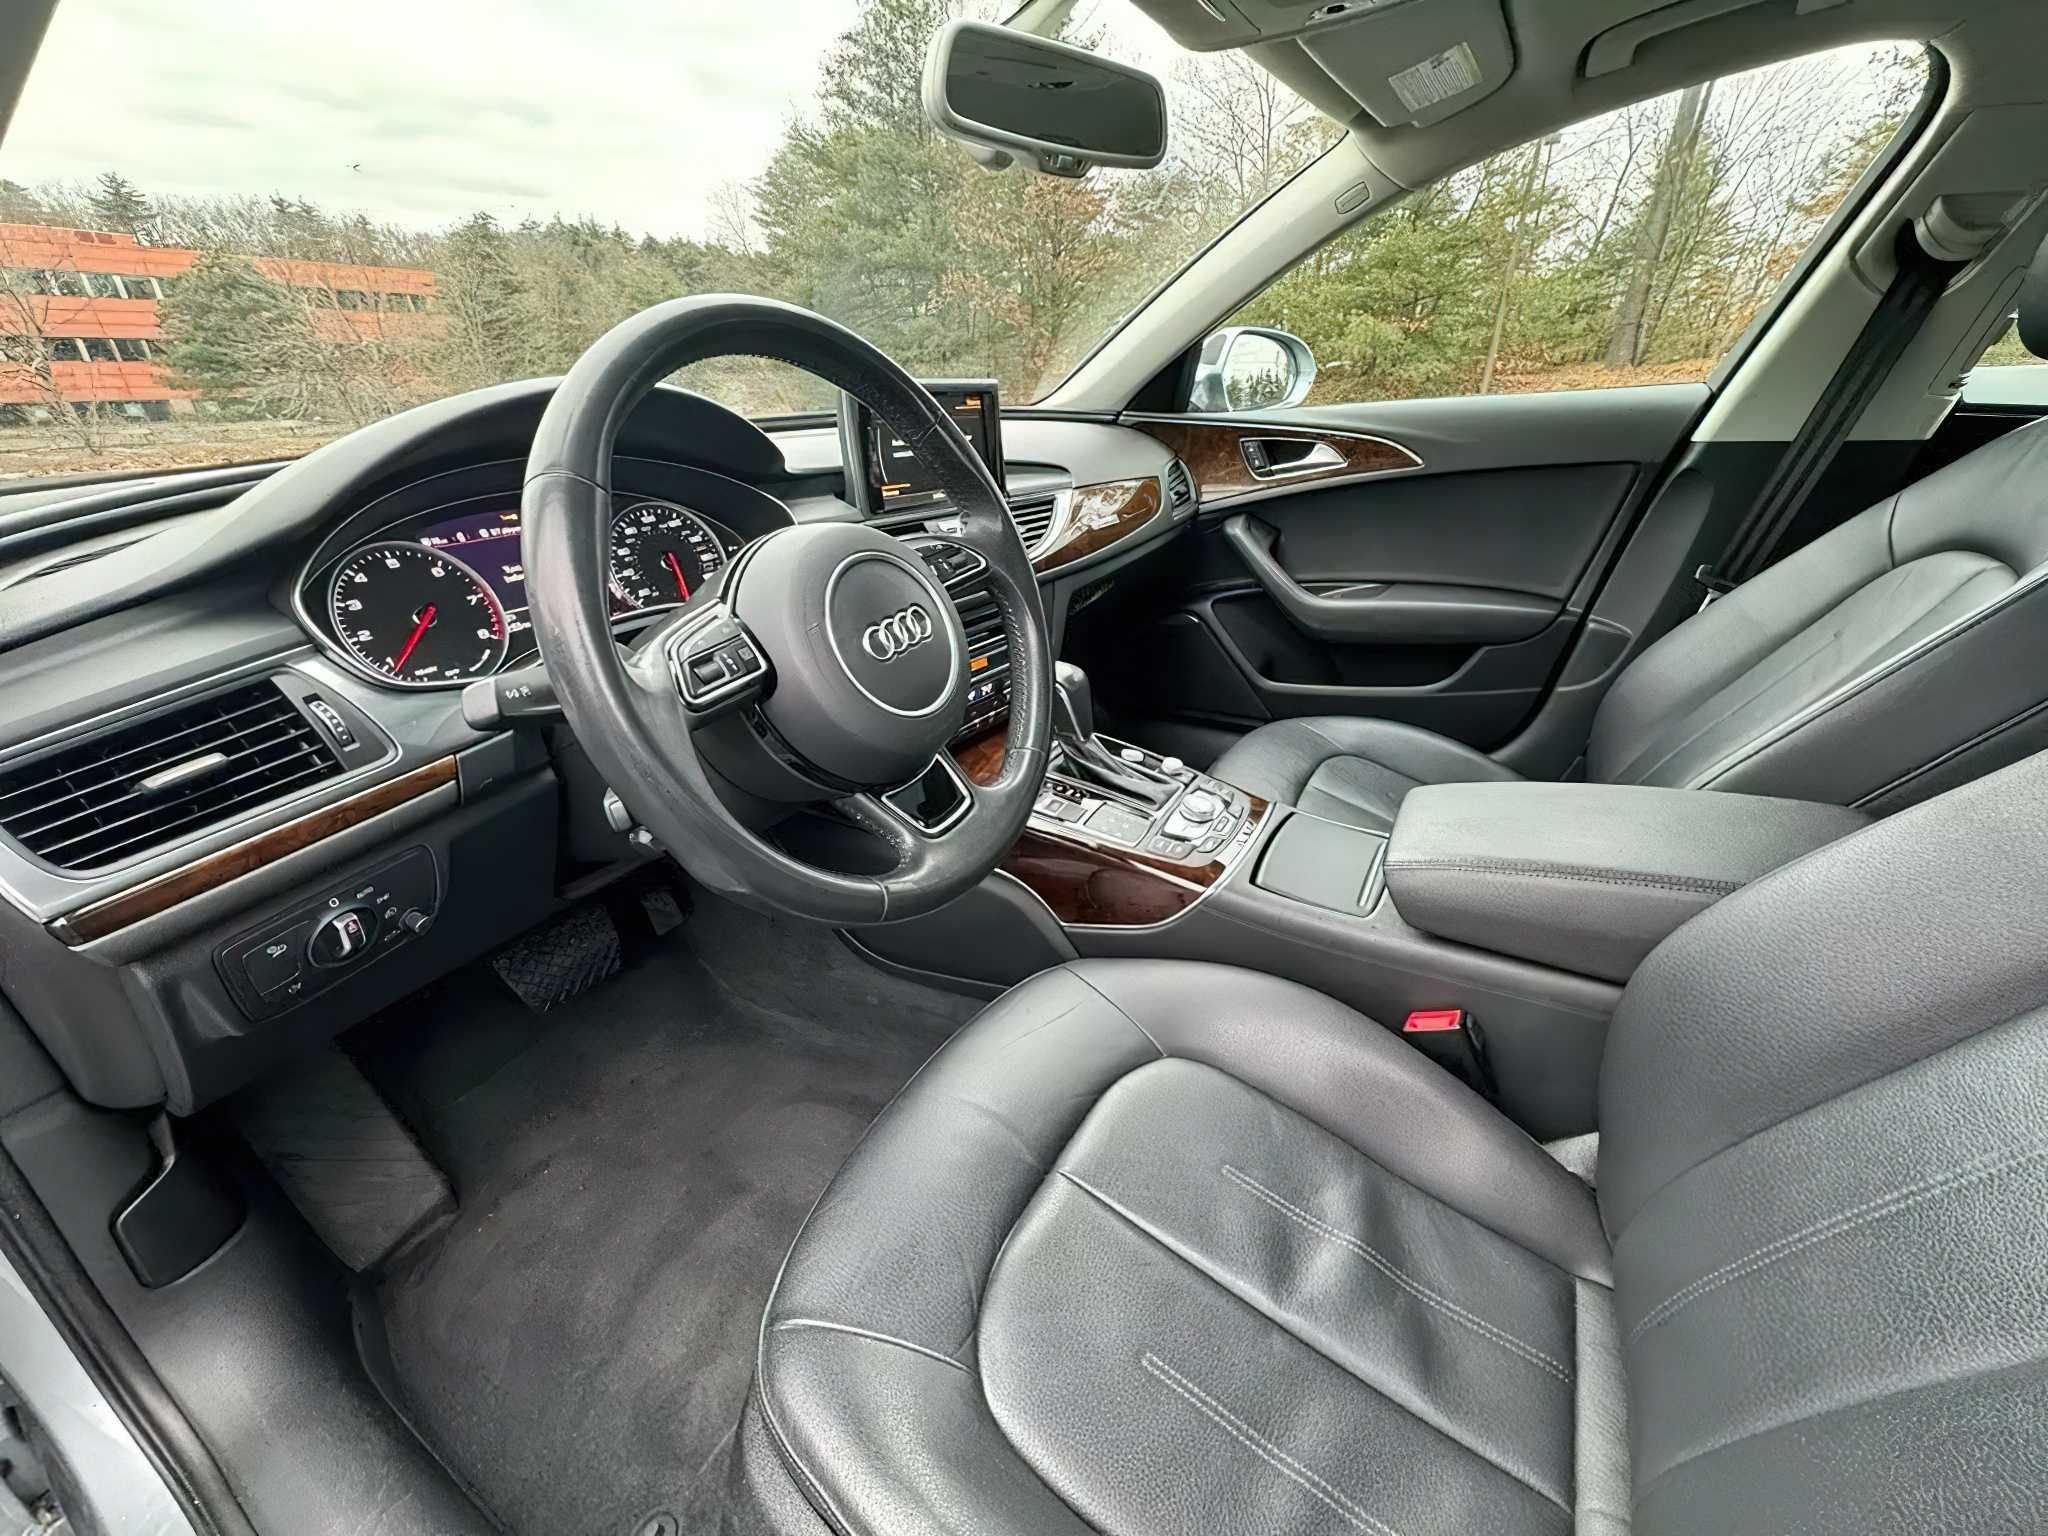 Audi A6 2017 Gray